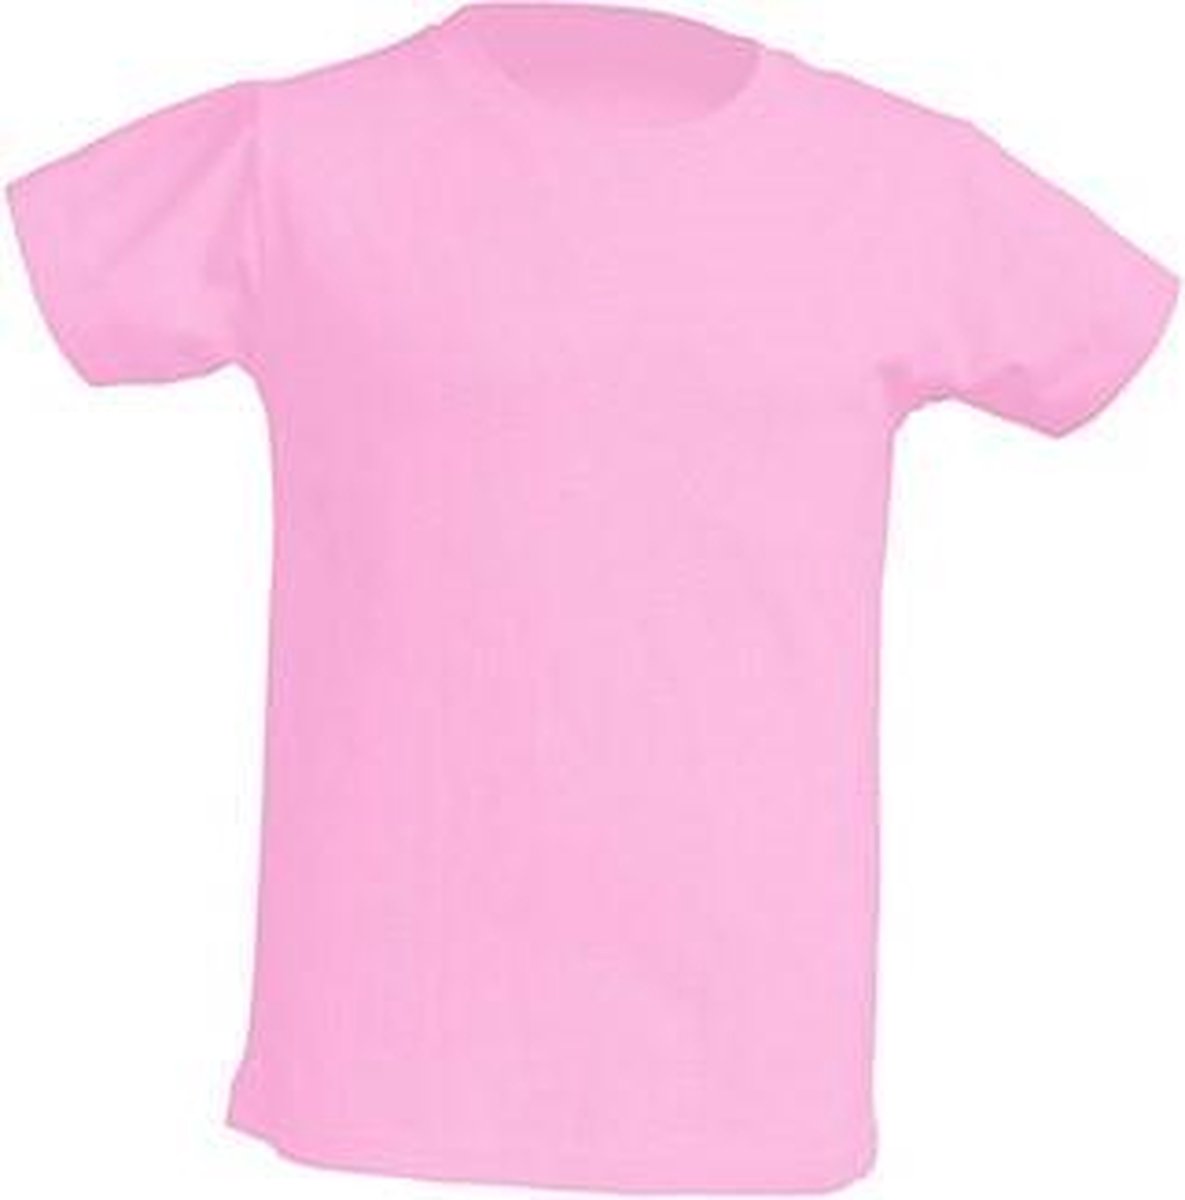 JHK Kinder t-shirt in pink maat 9-11 jaar (140) - set van 5 stuks